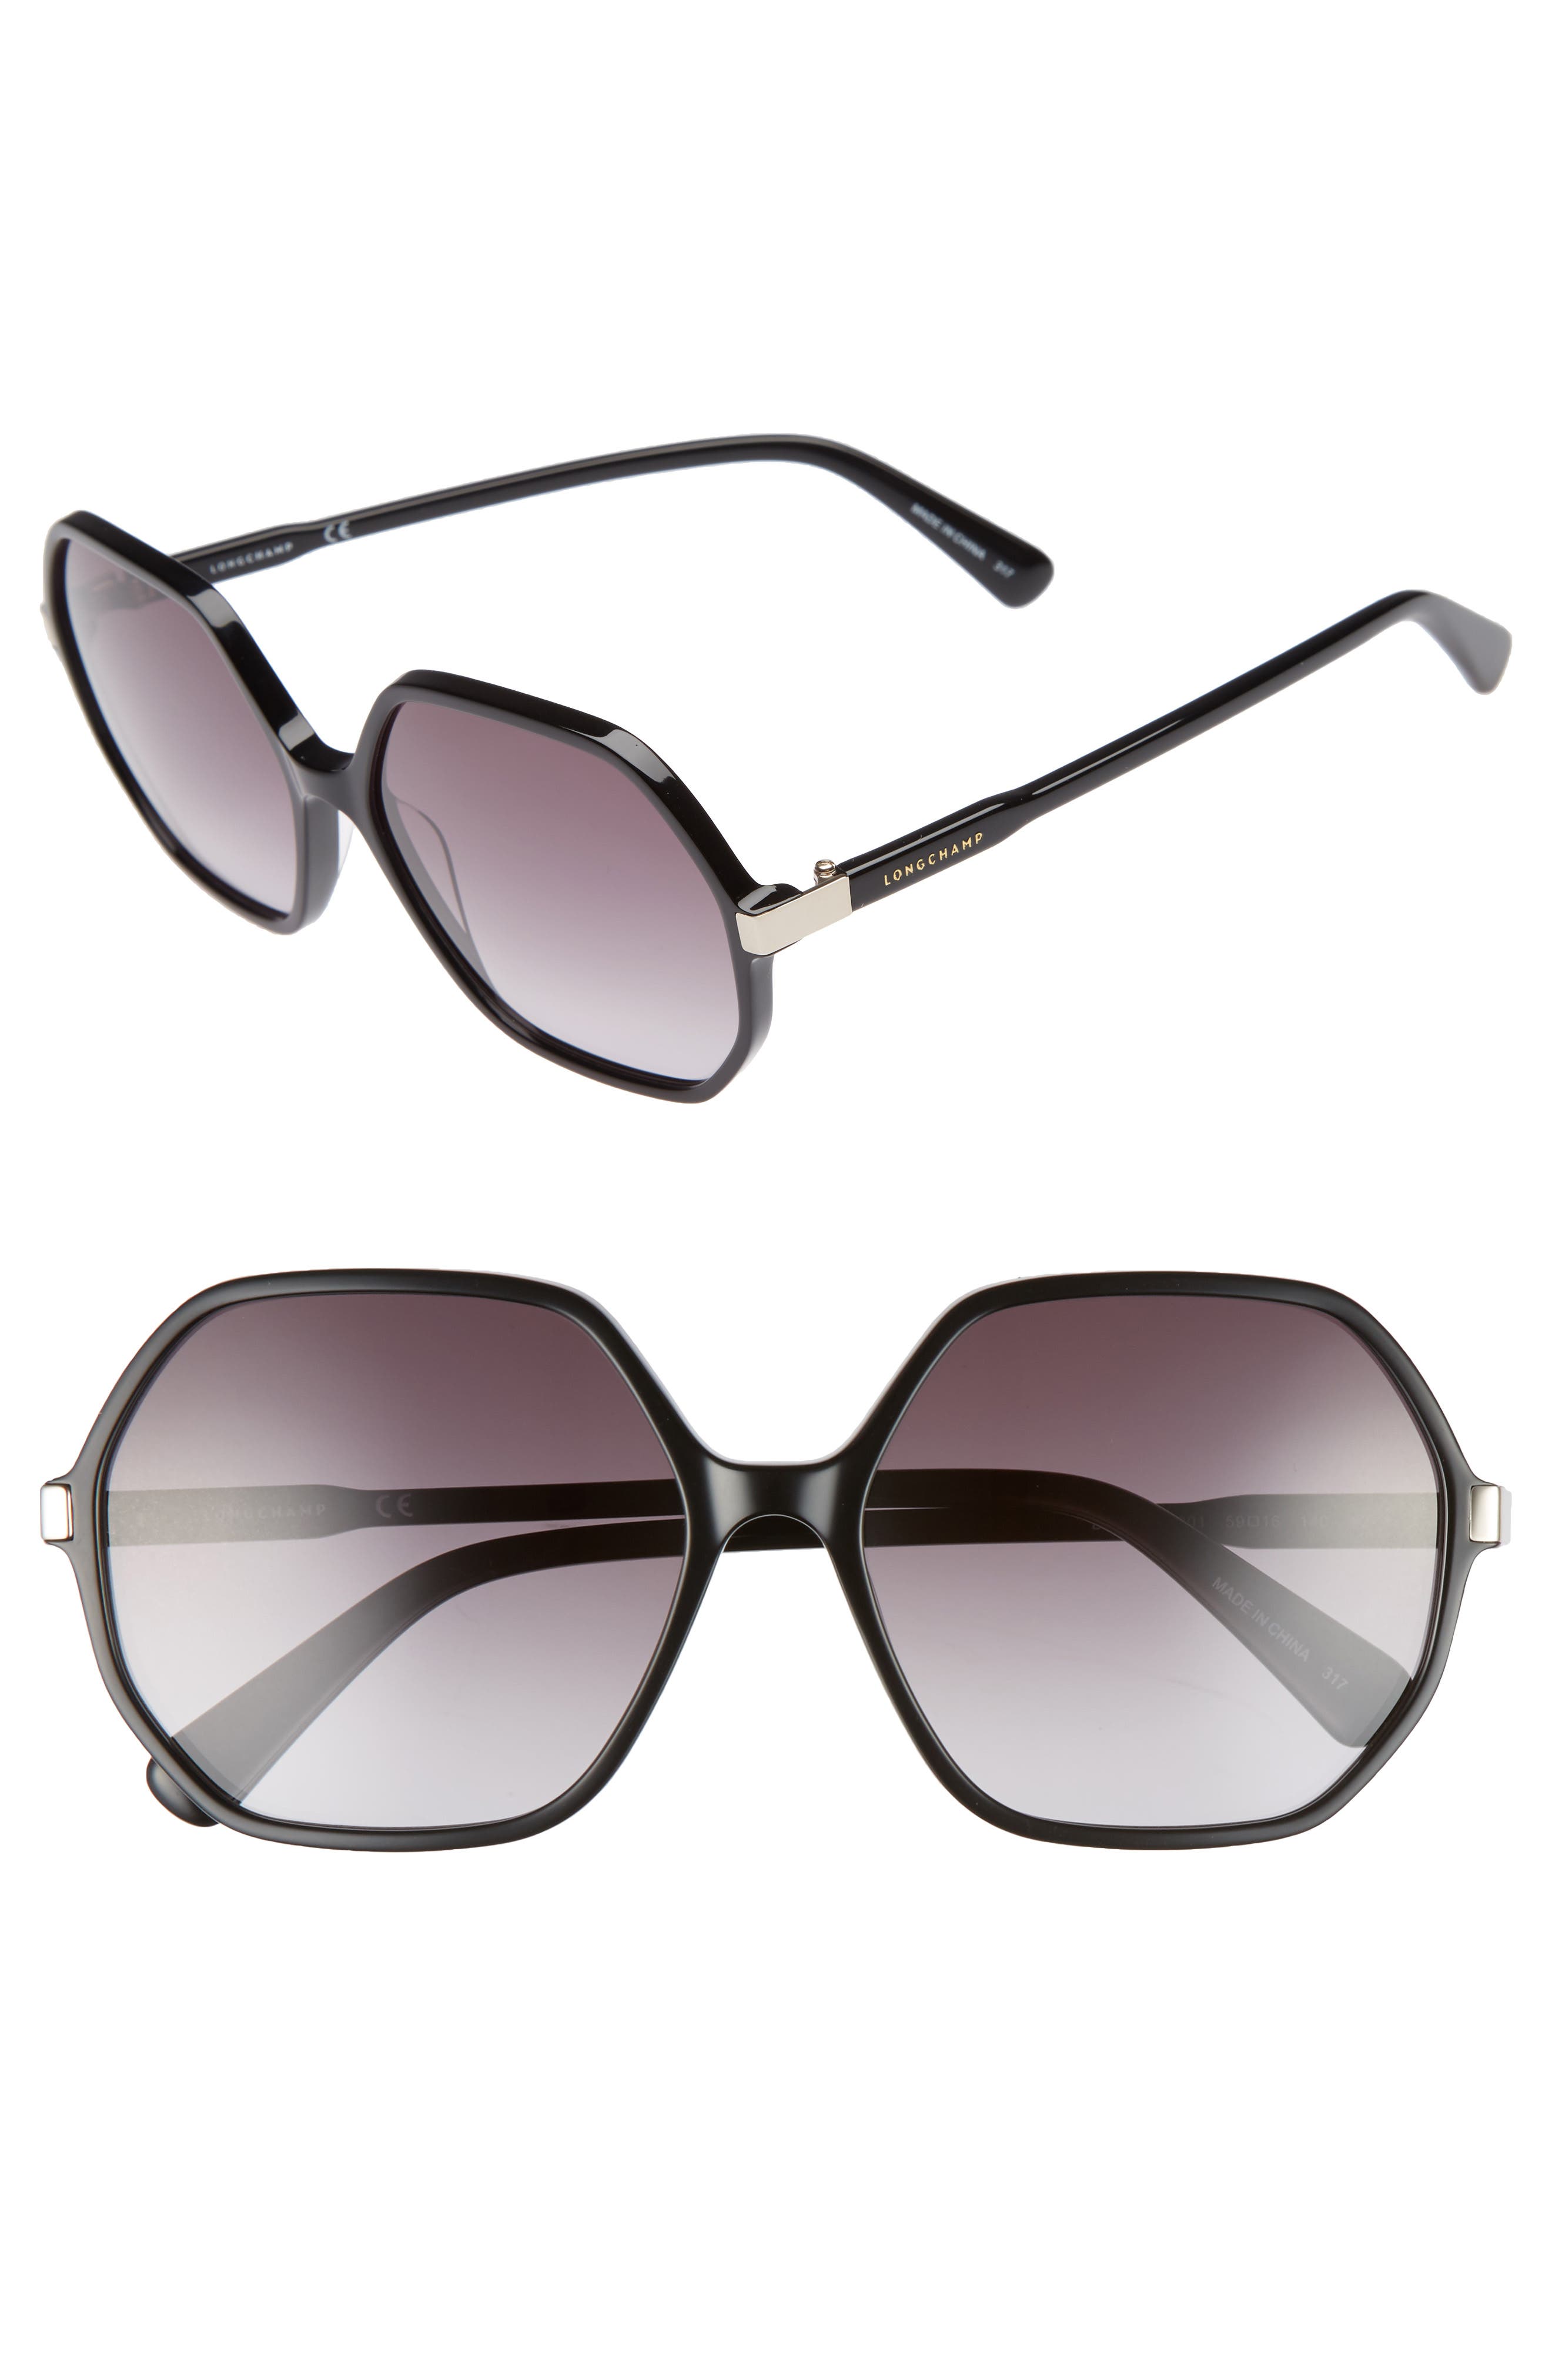 Retro Sunglasses | Vintage Glasses | New Vintage Eyeglasses